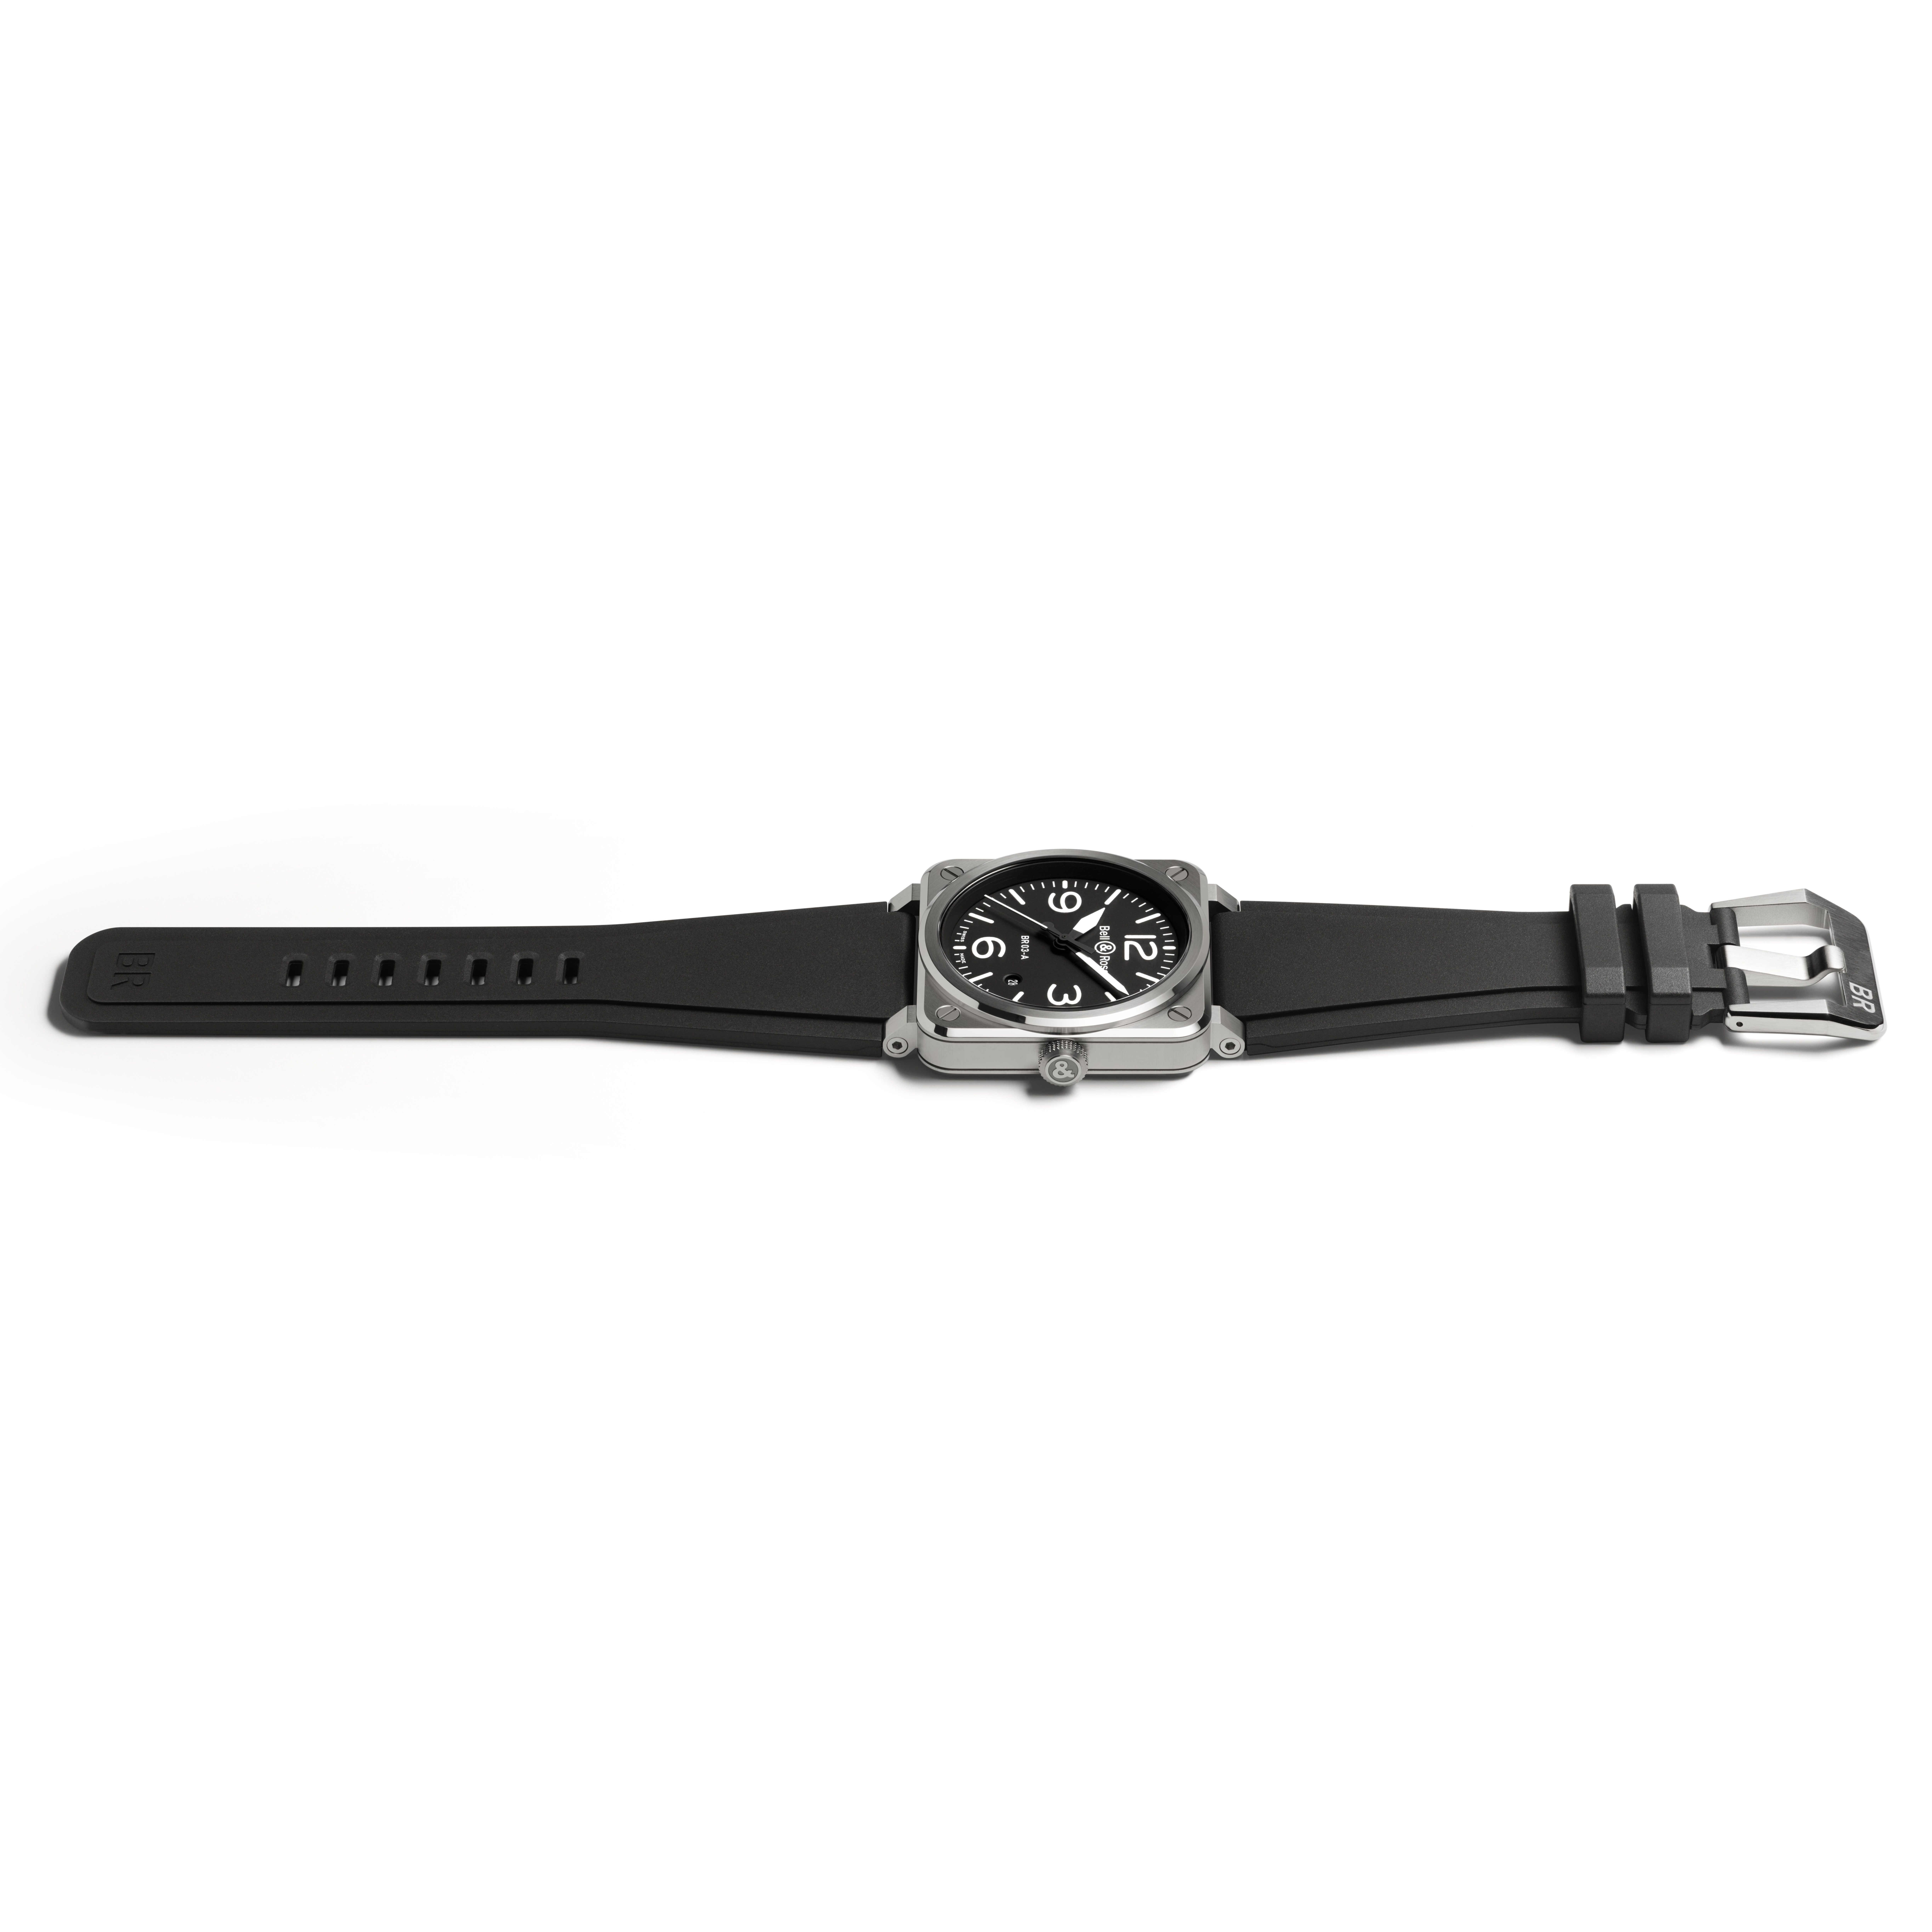 Bell & Ross BR 03 Steel & Black Rubber Strap Watch